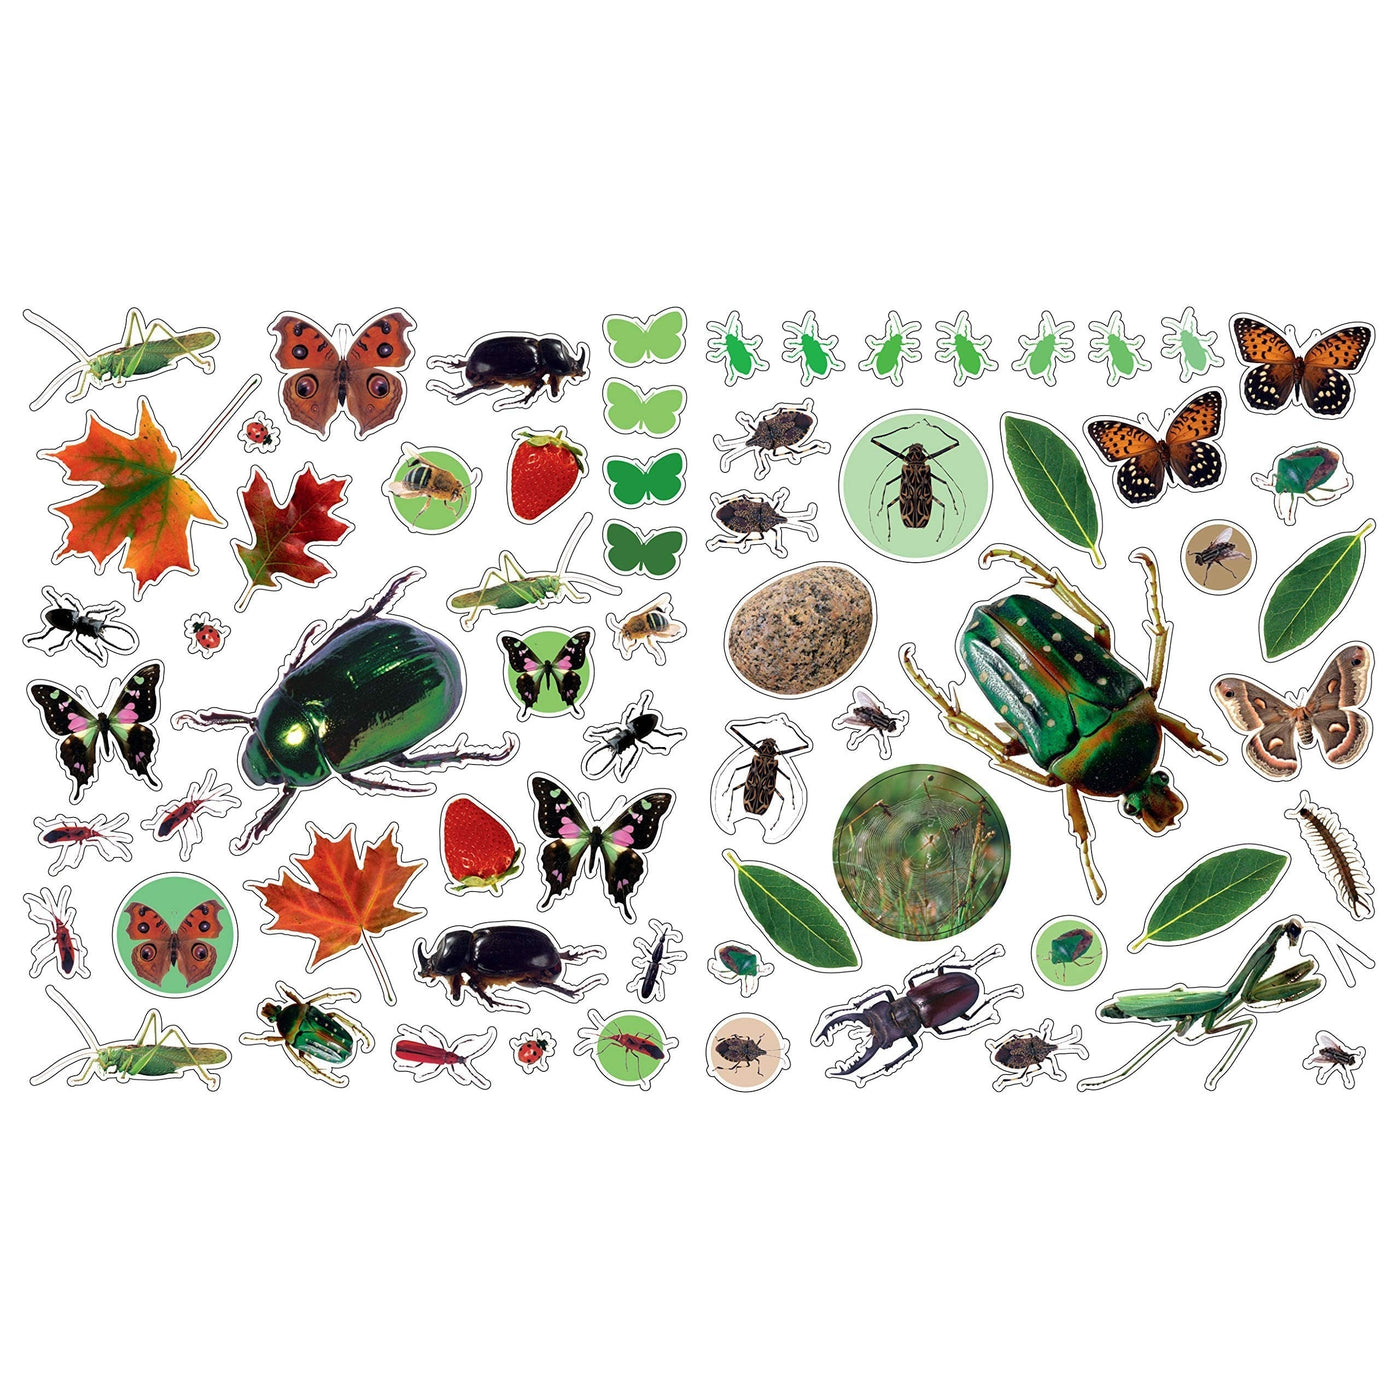 Eyelike Bugs - 400 Reusable Stickers